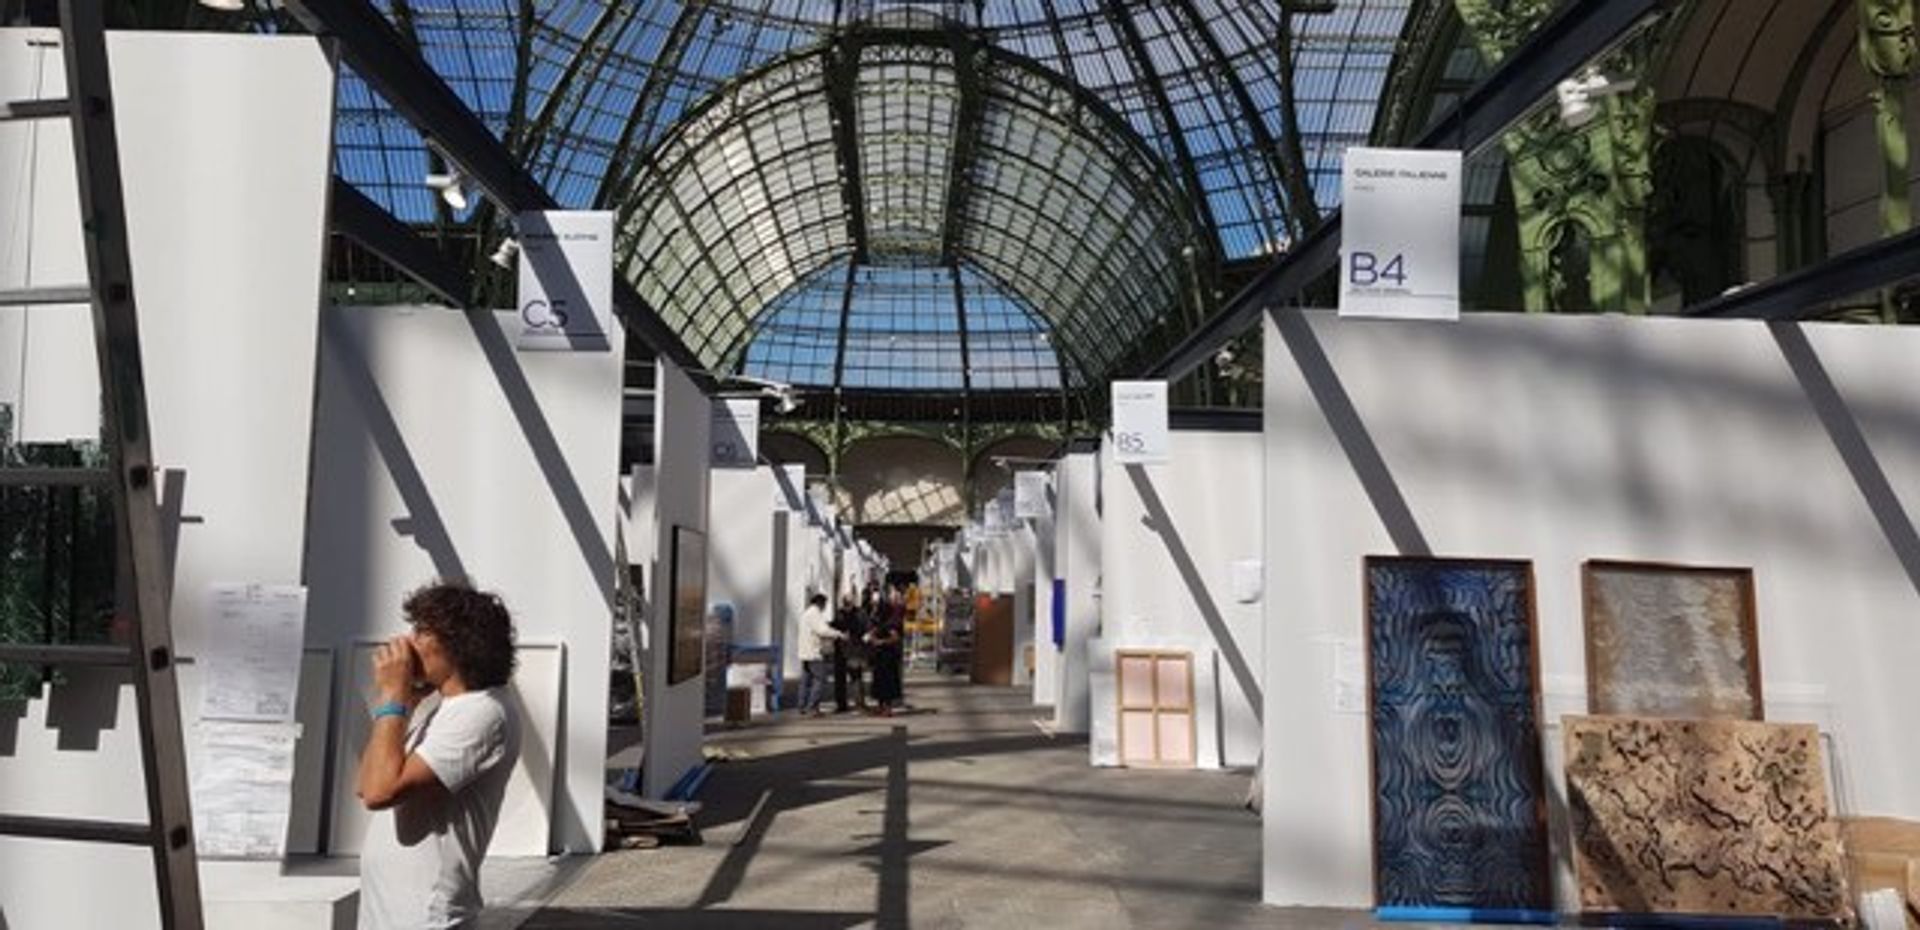 Les exposants en pleine installation, la veille de l’ouverture d’Art Paris 2020. © Thibaut David 